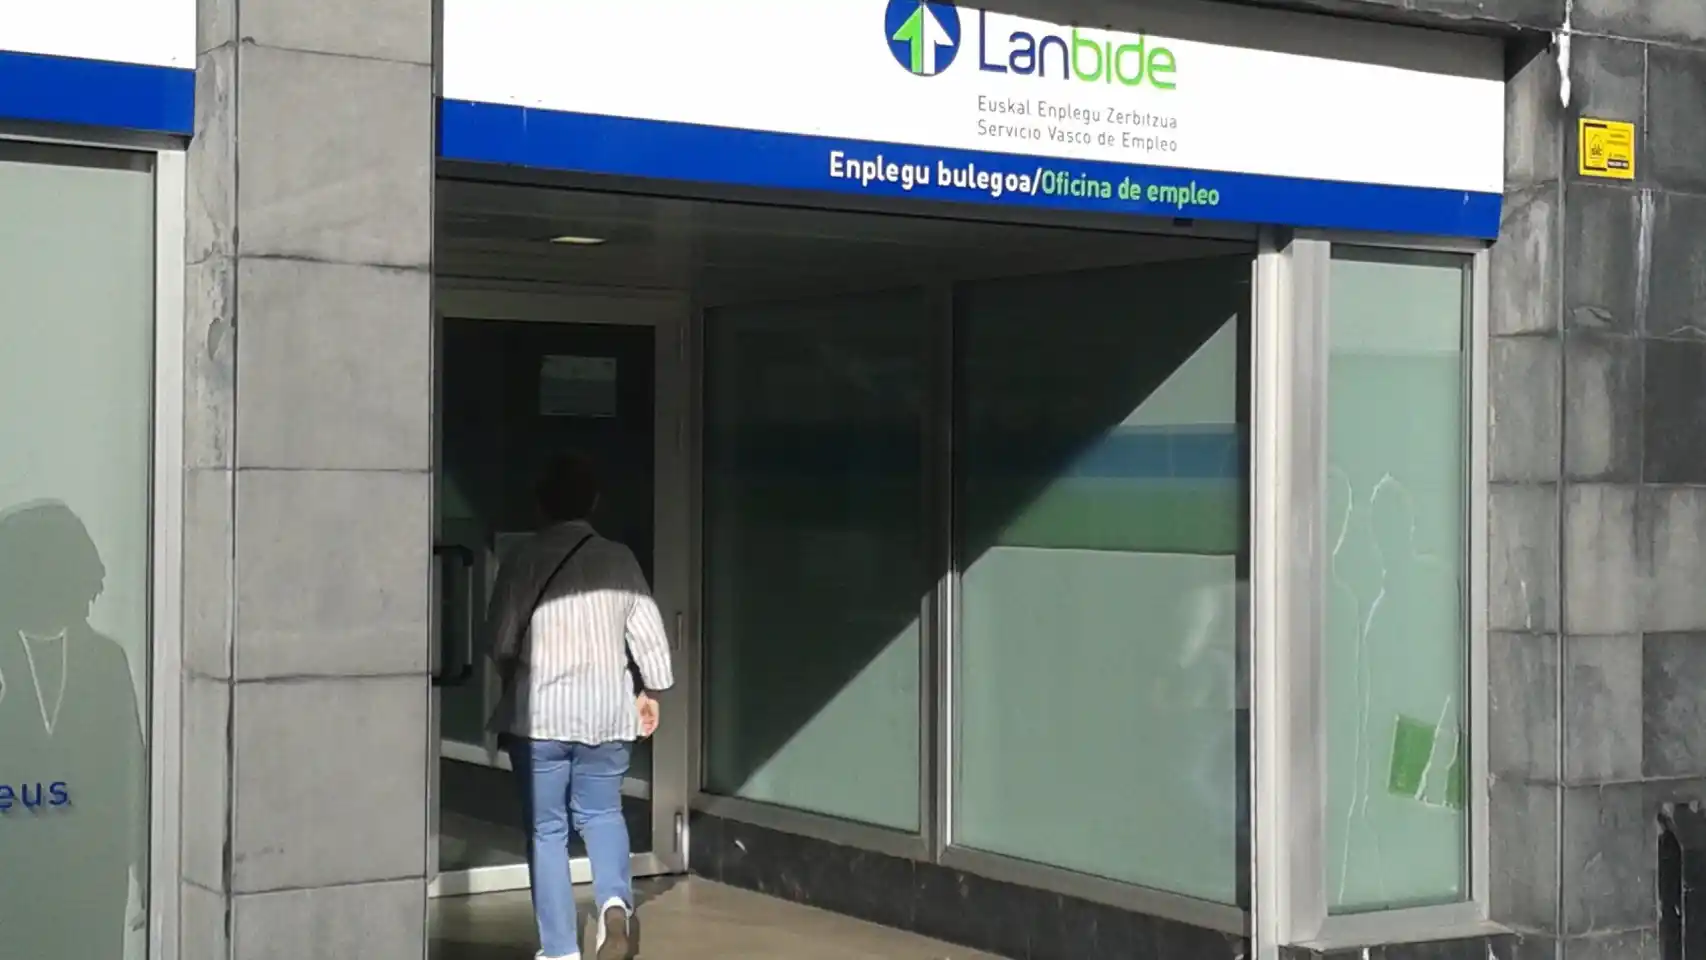 Cómo funciona el modelo Lanbide